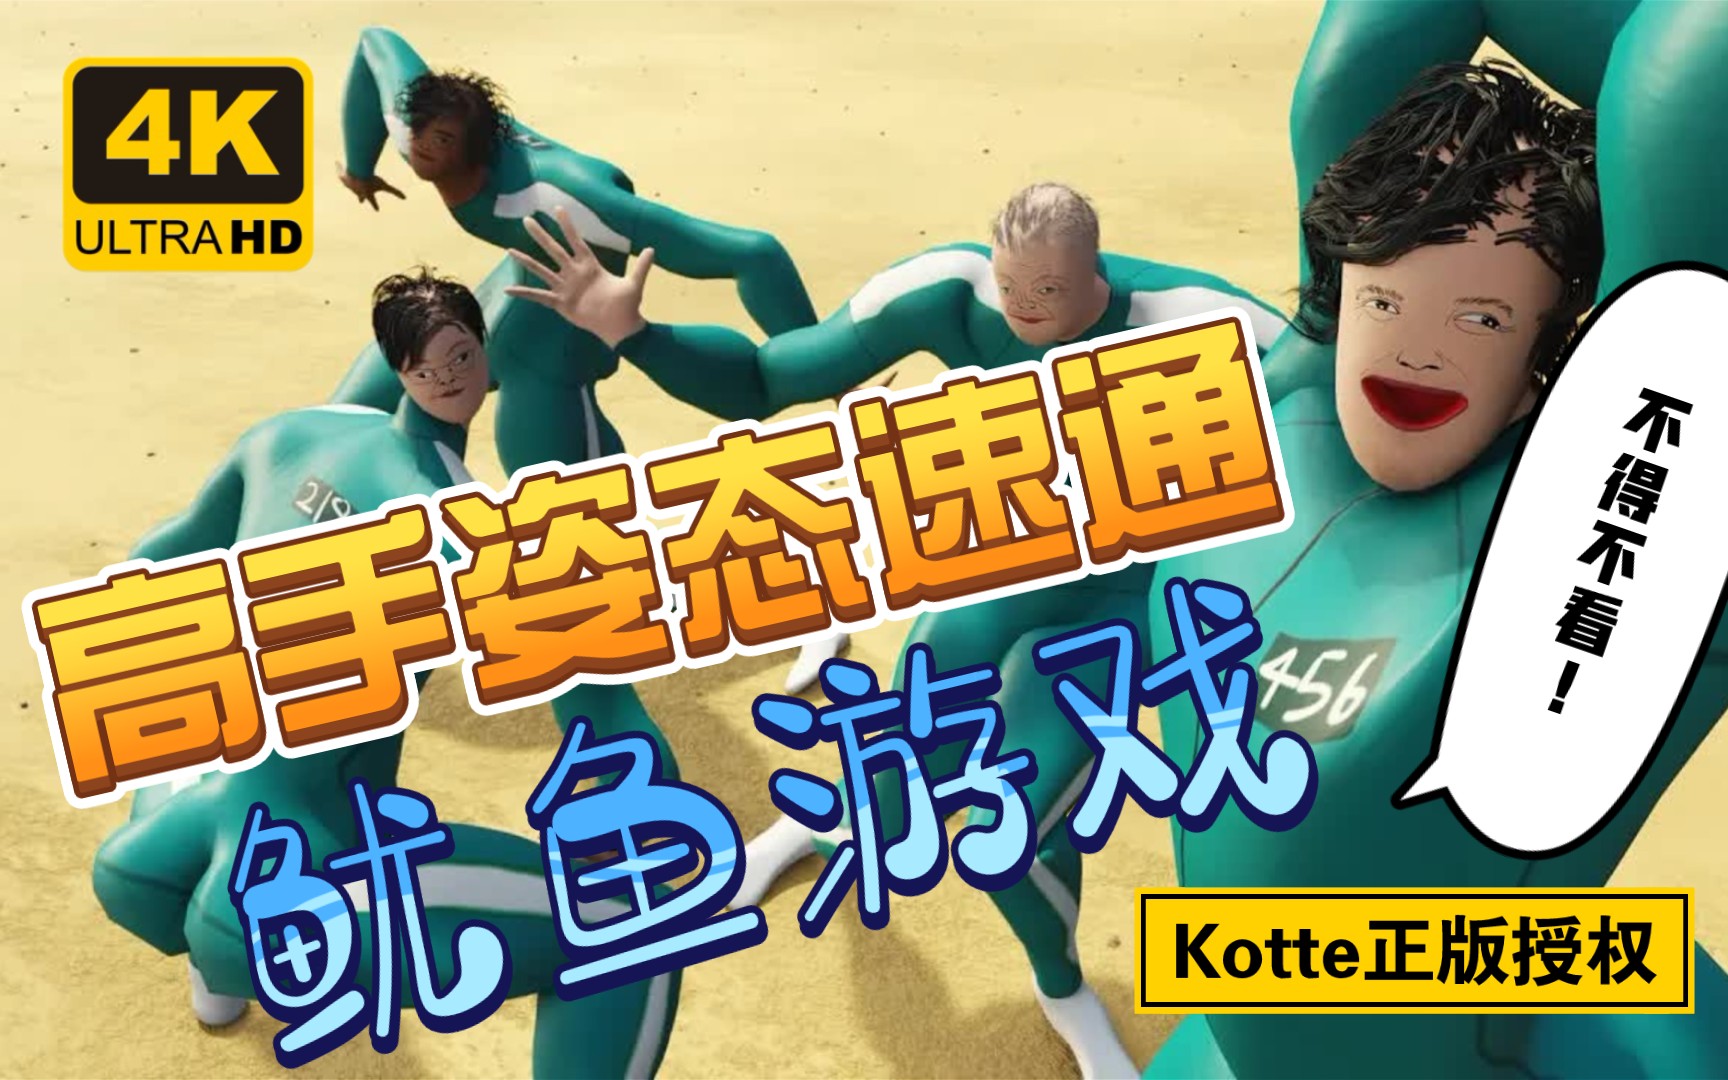 [Kotte三年动画] 比原版鱿鱼游戏还吓人 鱿鱼游戏高手速通秘籍！